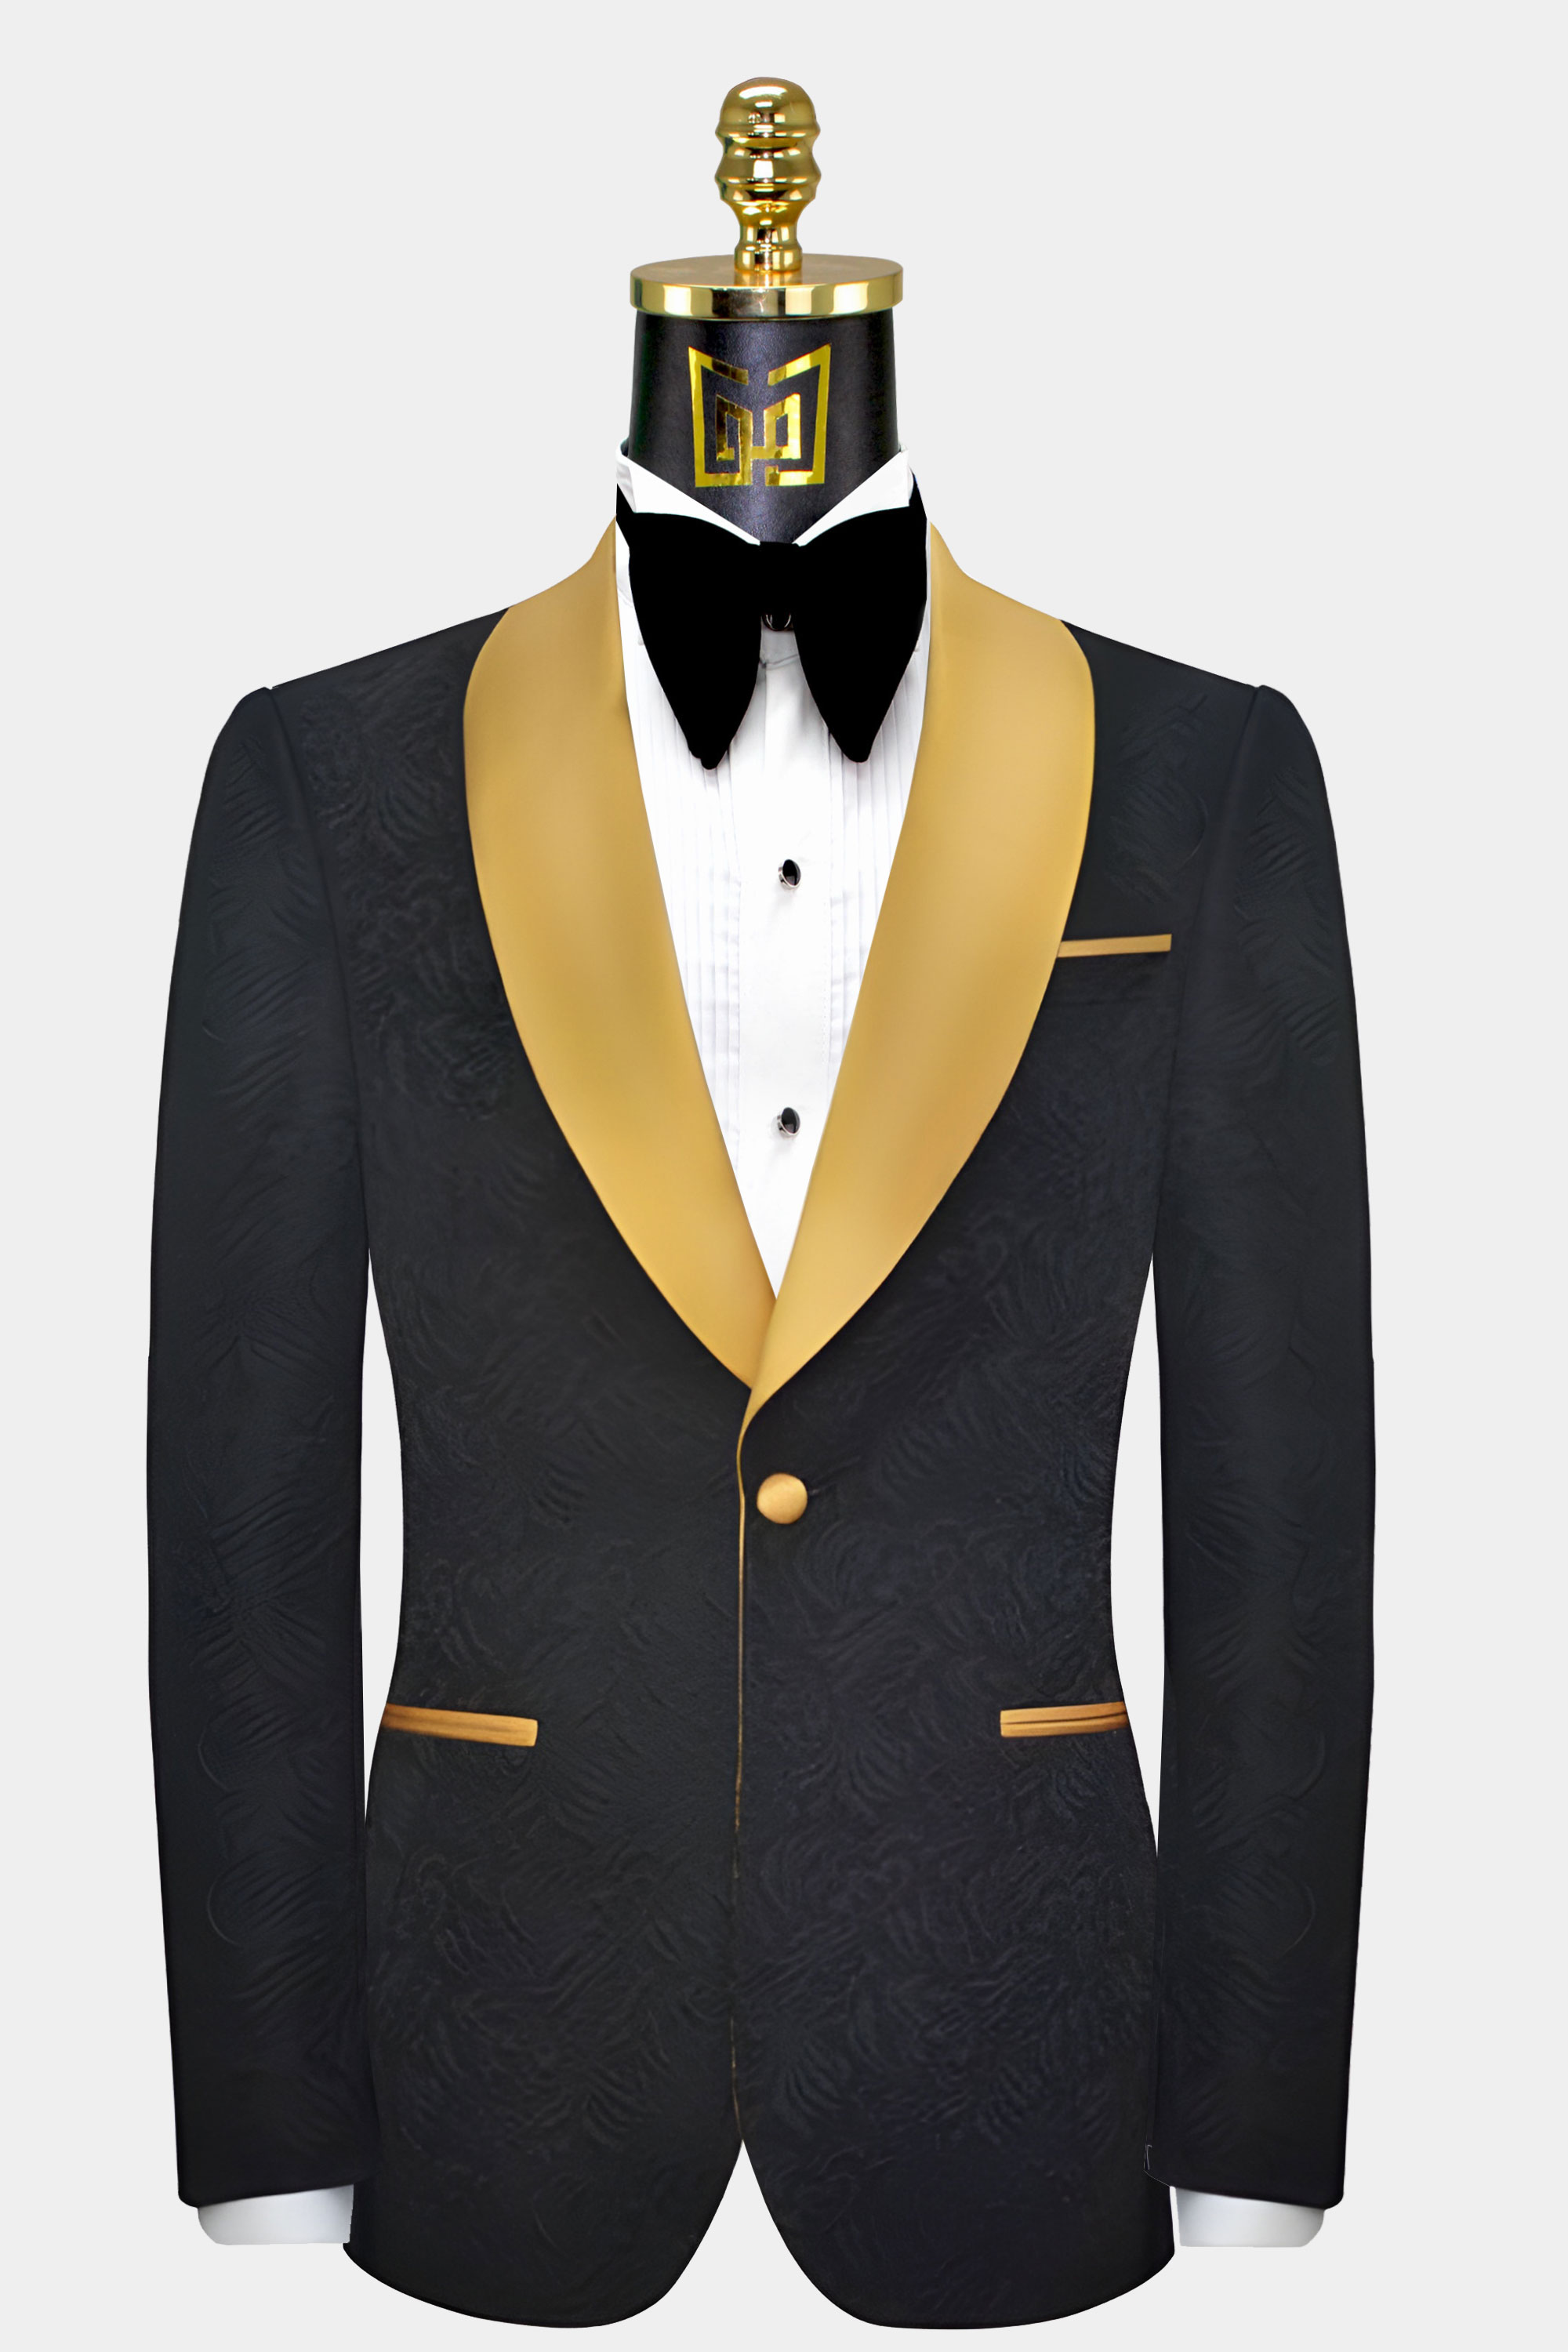 限定モデルや Suit Gold blog.knak.jp